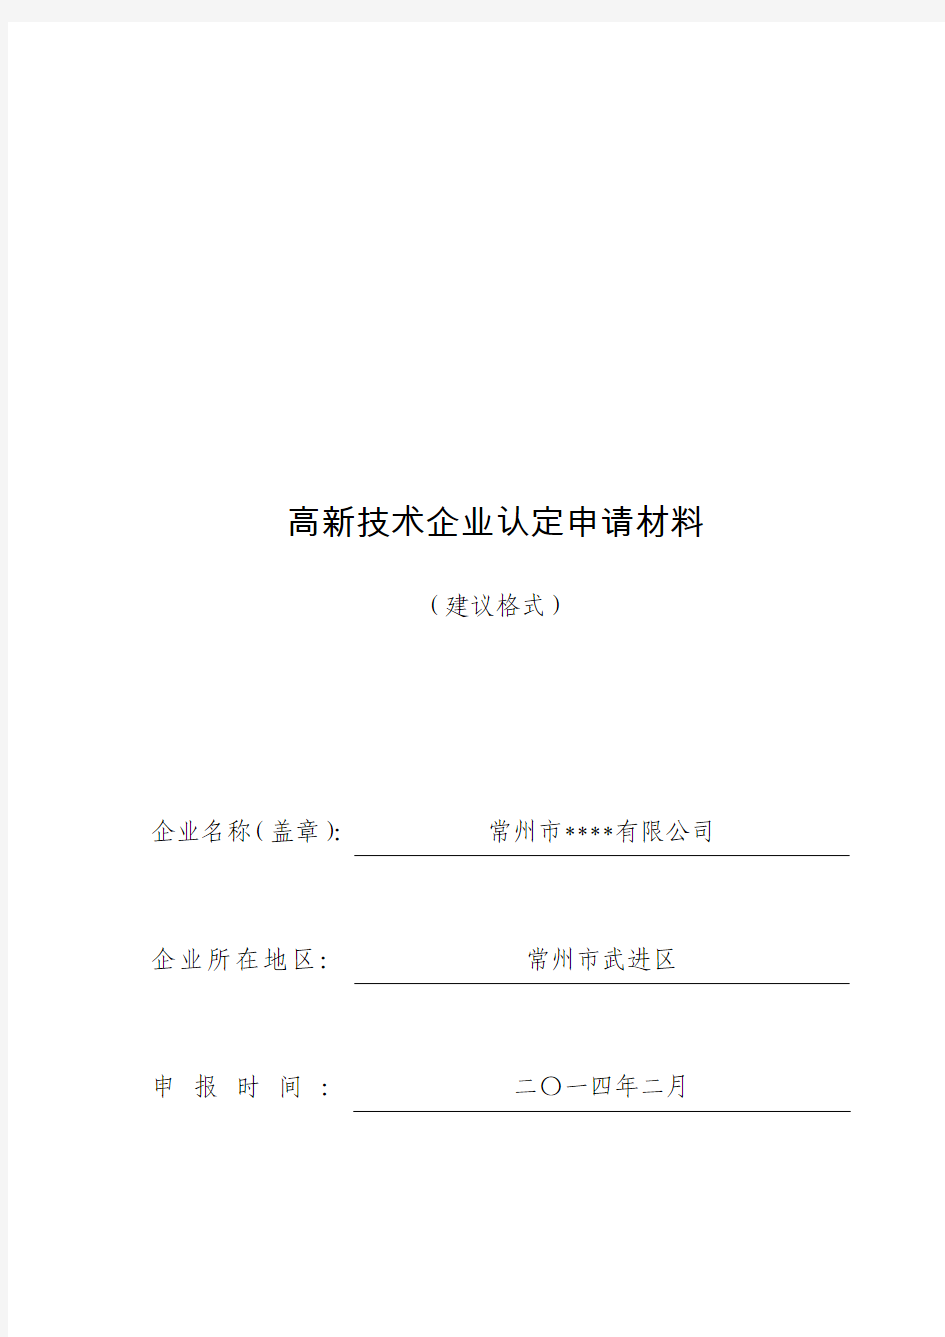 2014年高企新申报申请材料范式(定)